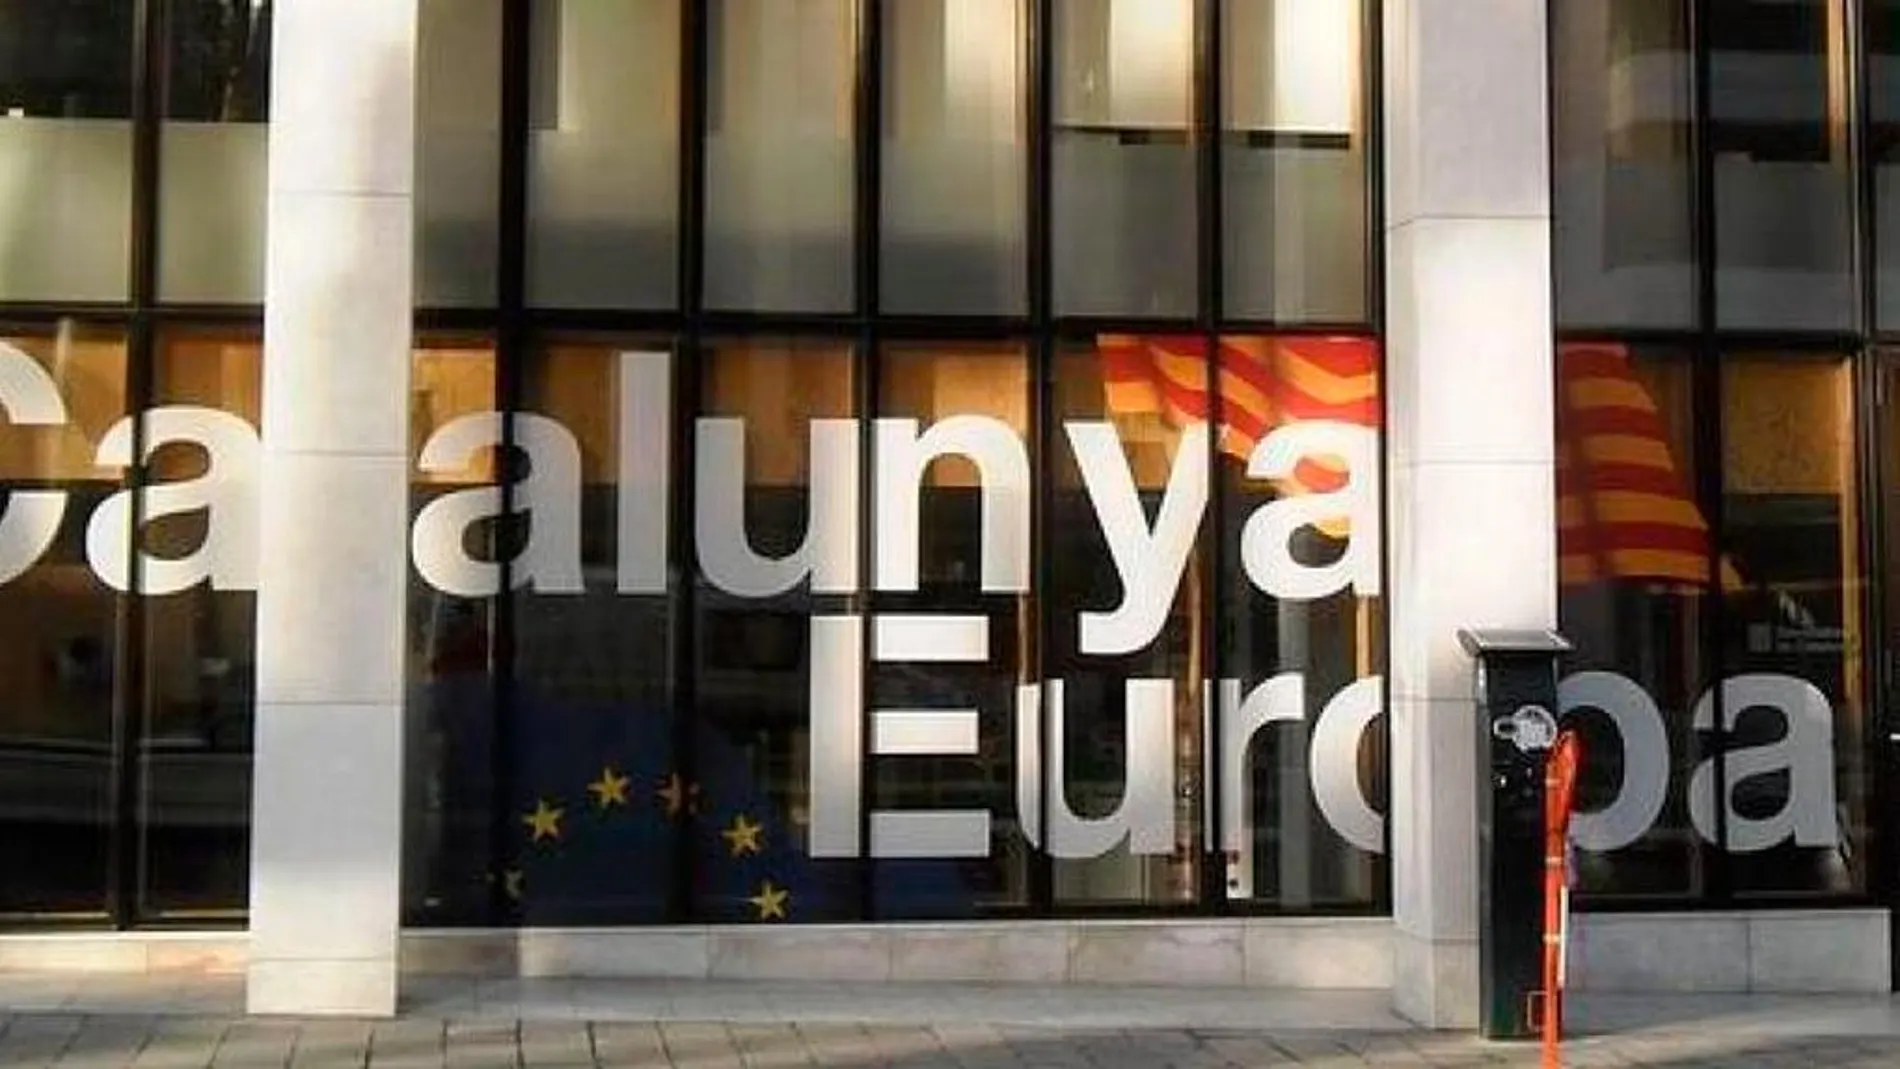 Exteriores pide cerrar las "embajadas catalanas"de Berlín, Ginebra y Londres